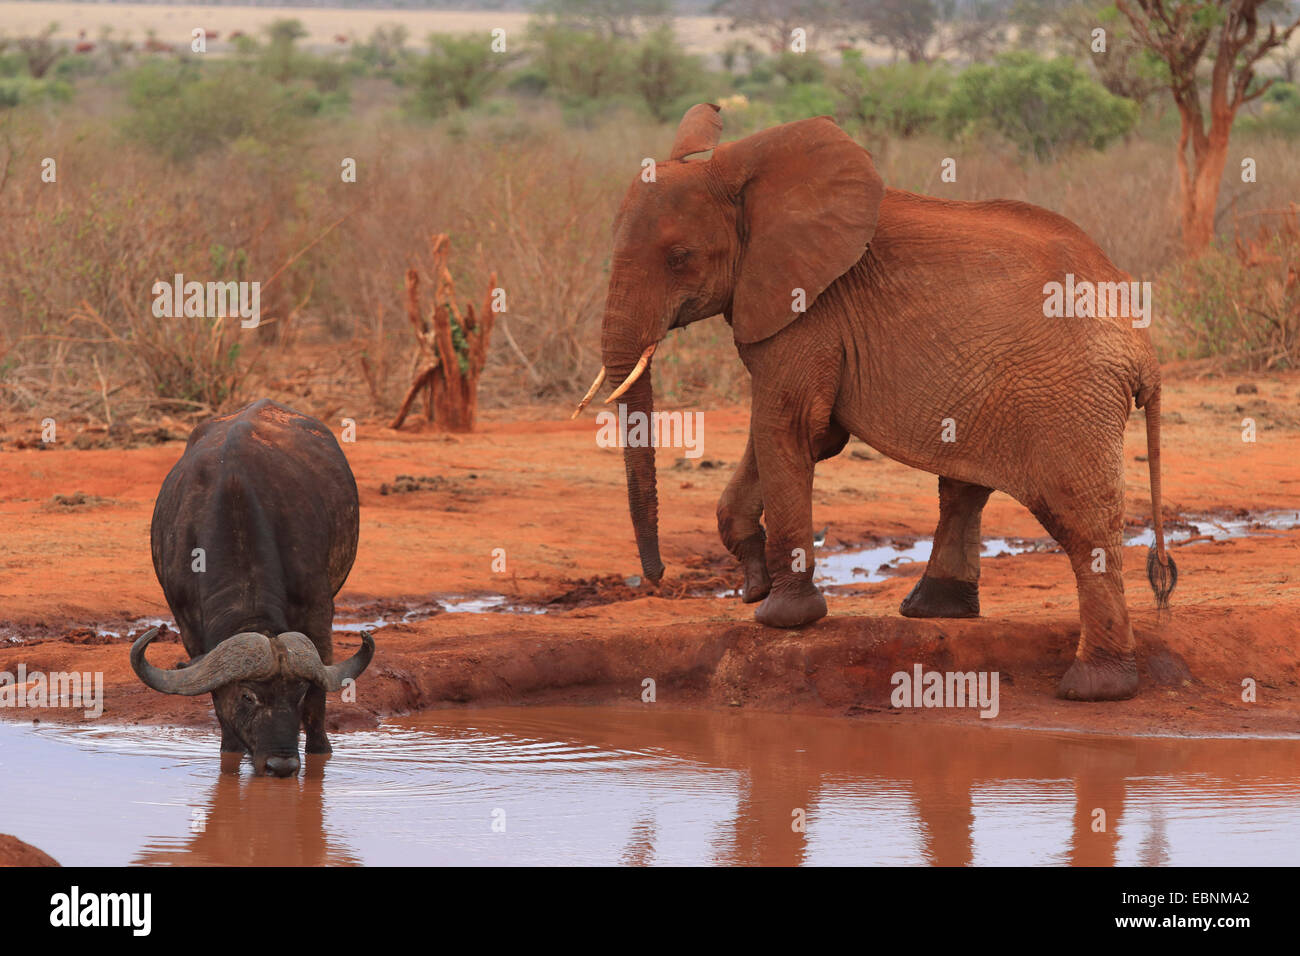 African elephant (Loxodonta africana), juvenile elephant and buffalo, Kenya, Tsavo East National Park Stock Photo